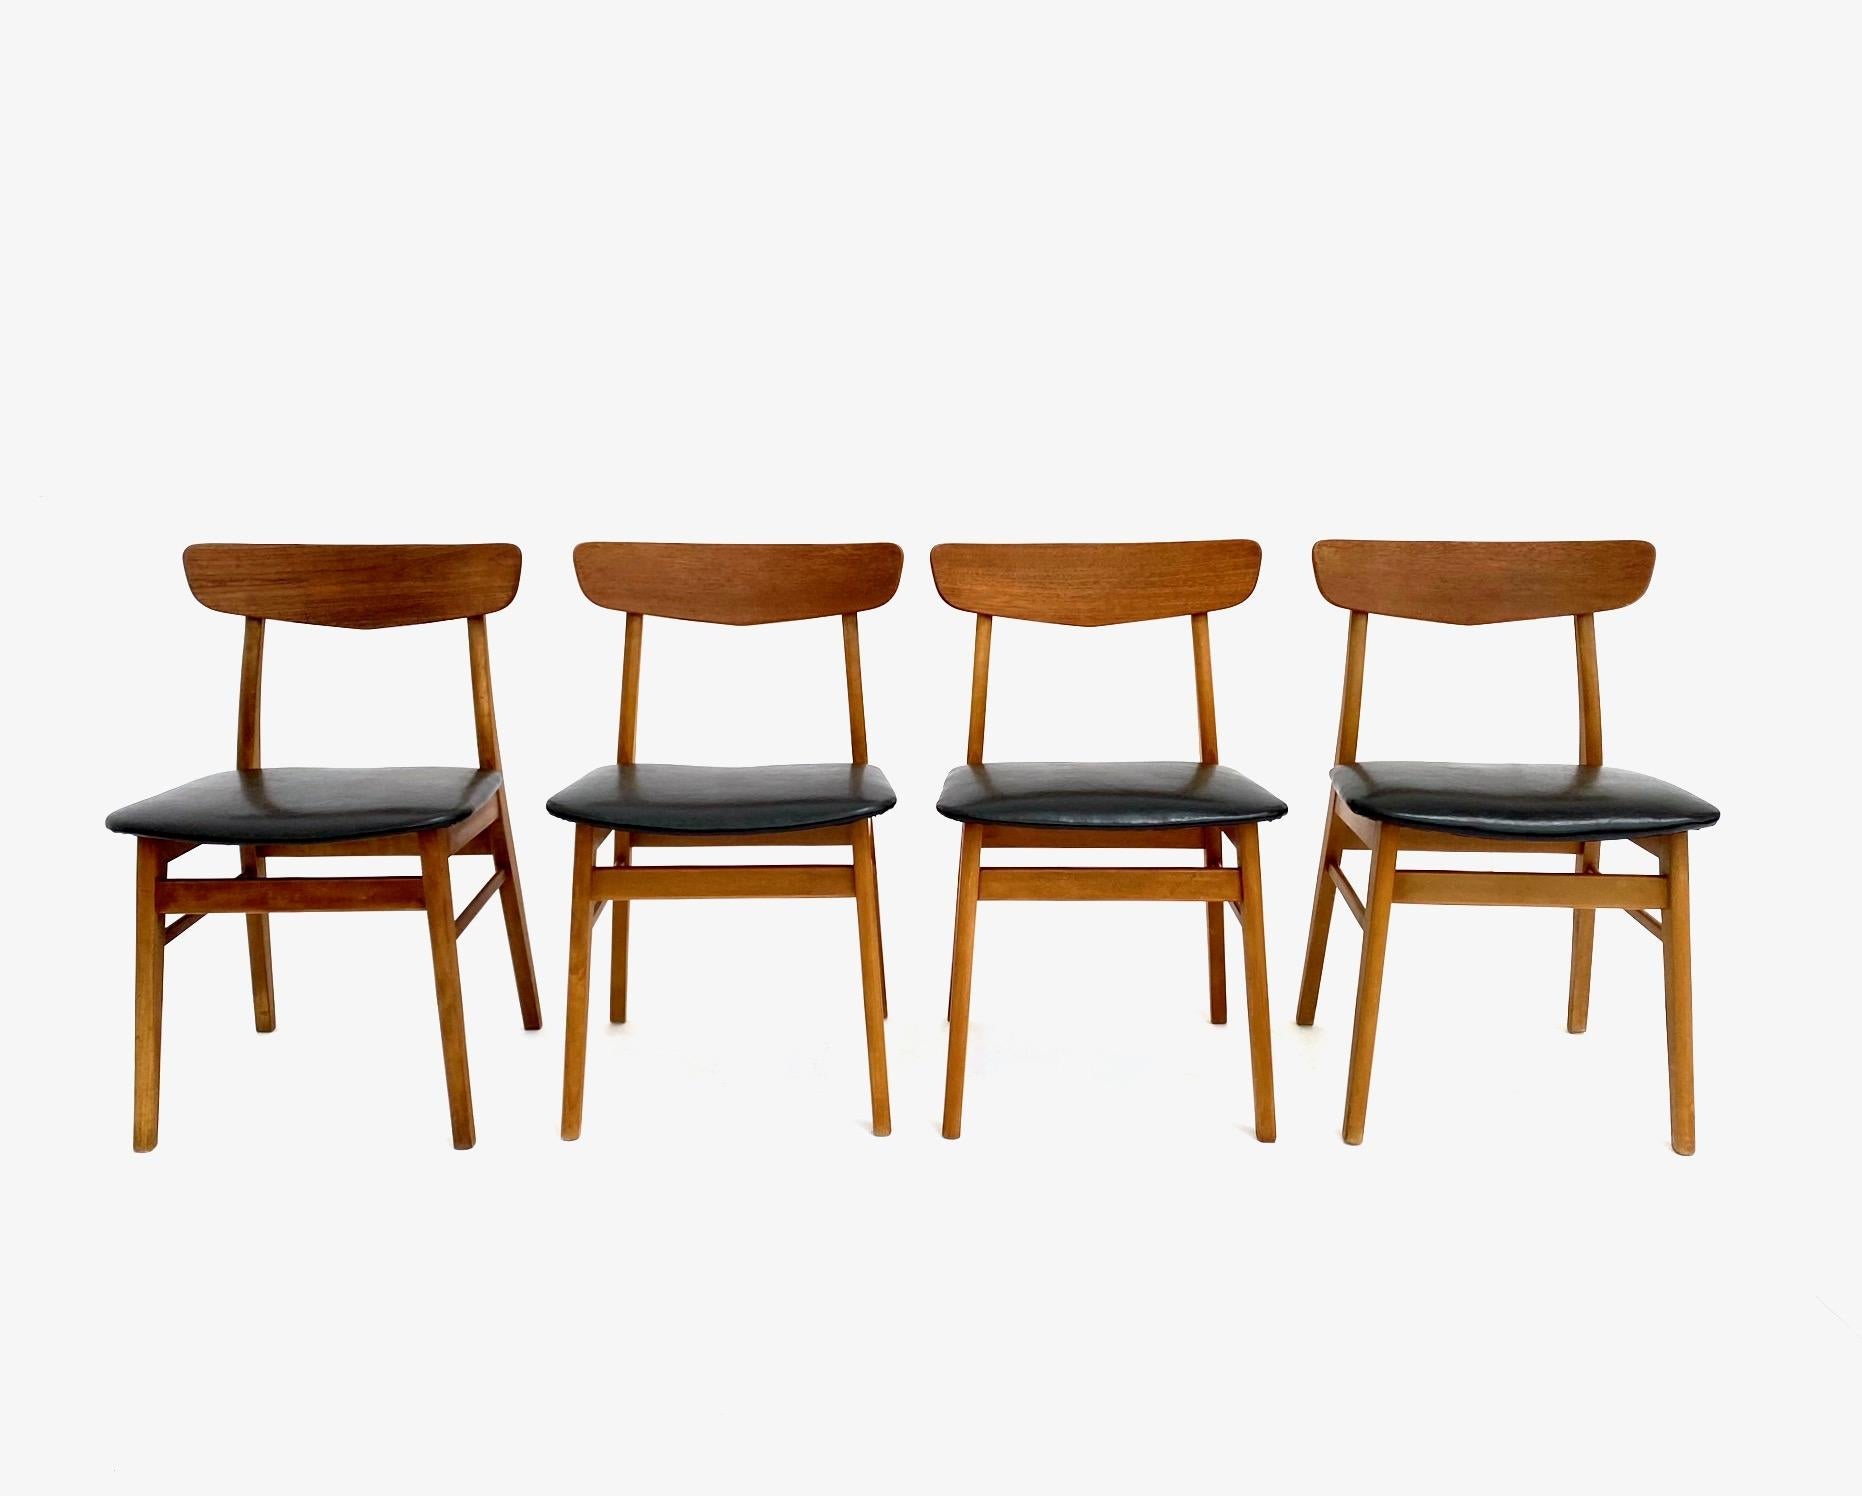 Ein wunderschönes Set aus 4 Esszimmerstühlen aus schwarzem Vinyl in Teakholz und Buche von Farstrup Møbelfabrik, die eine stilvolle Ergänzung für jeden Essbereich darstellen.

Die Stühle sind mit breiten Sitzpads und Rückenlehnen aus Holz